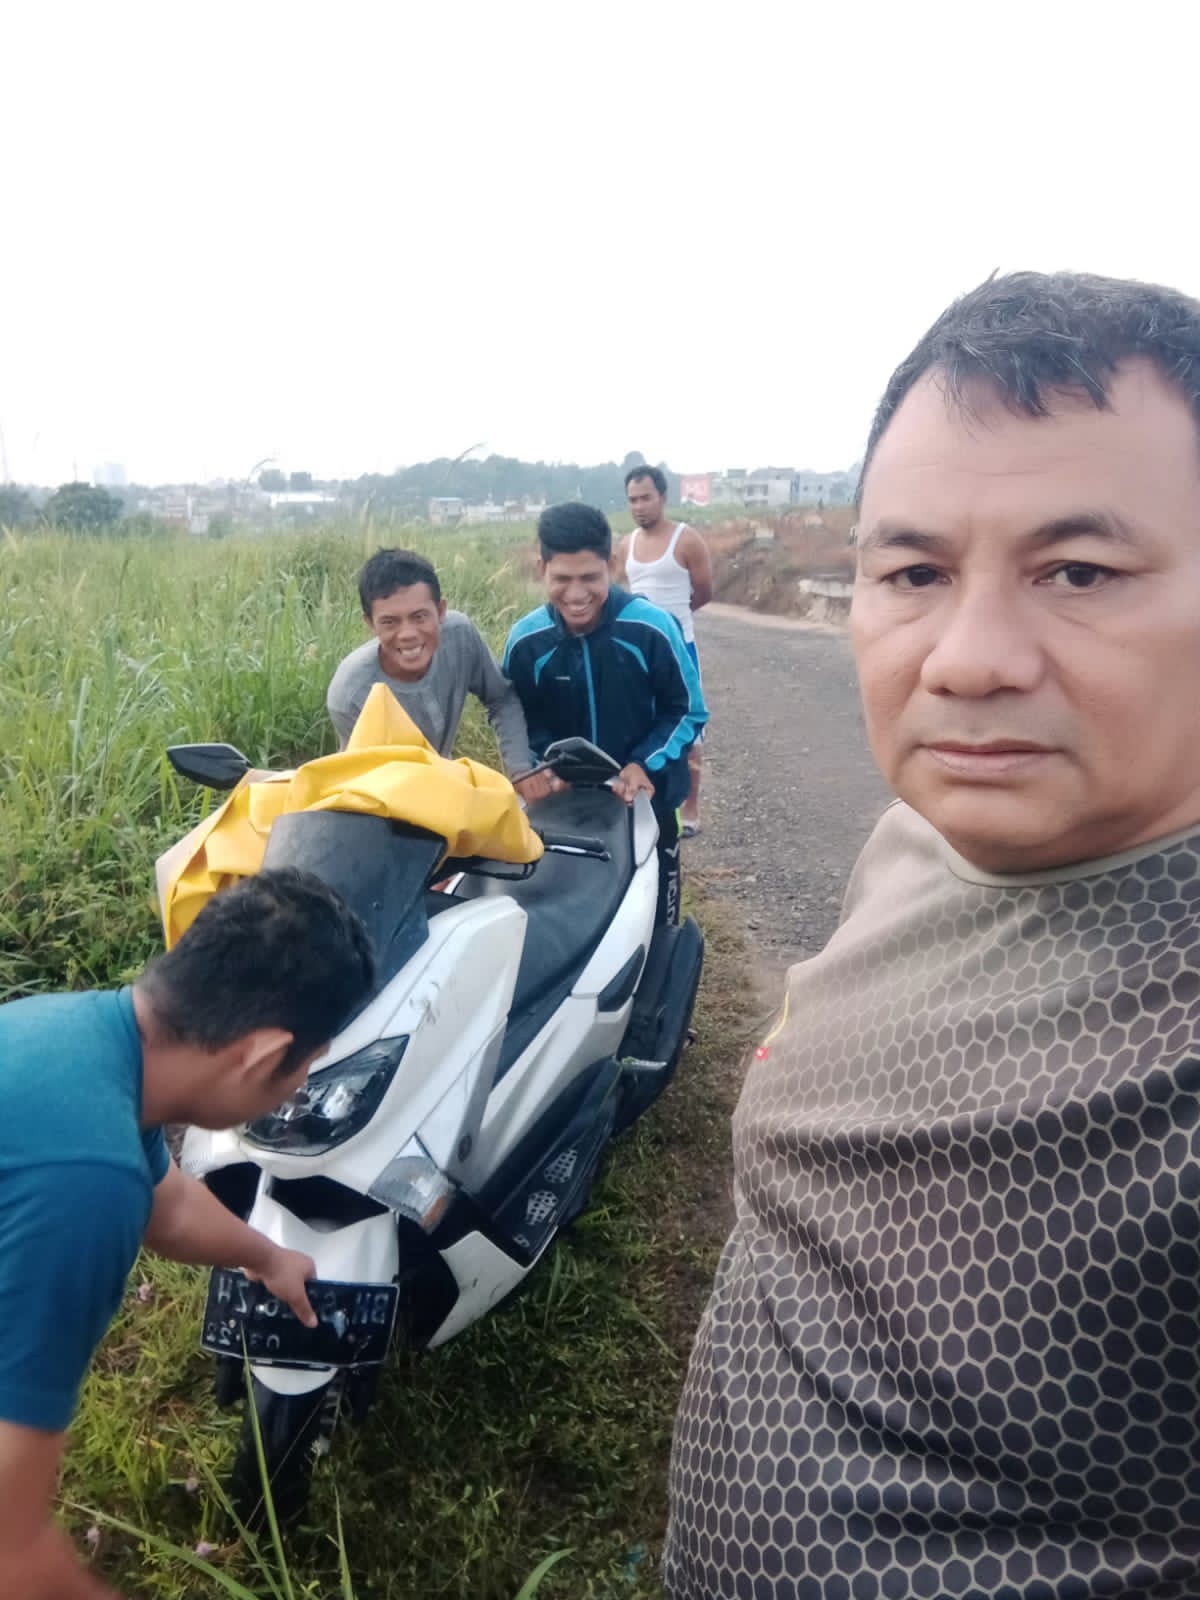 Polisi Serahkan Motor Nmax yang Ditemukan Warga di Areal Kuburan Cina Kepada Pemiliknya